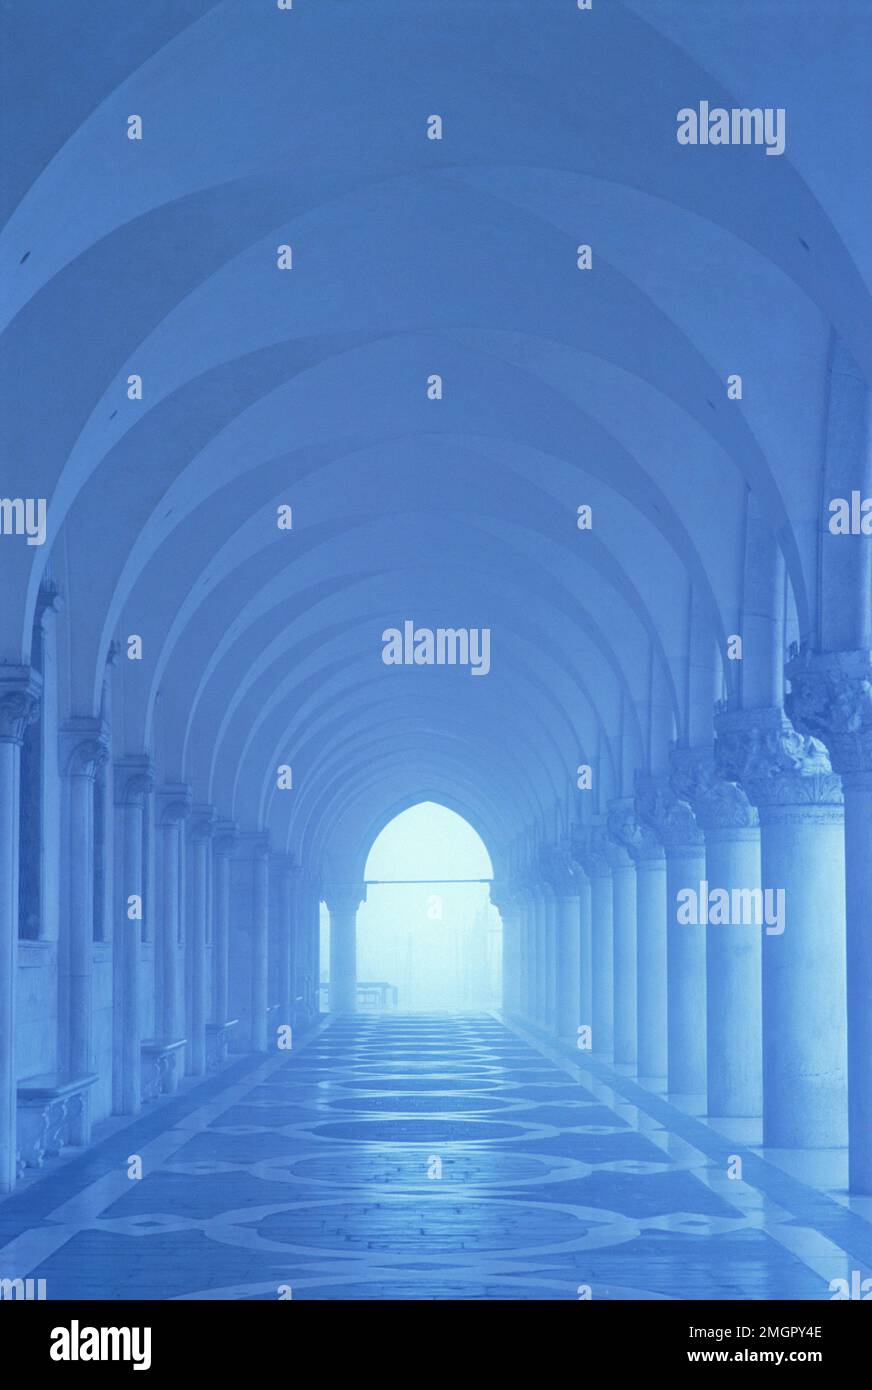 Italie, Venise, Palais des Doges, colonnes et arches dans des tons bleus Banque D'Images